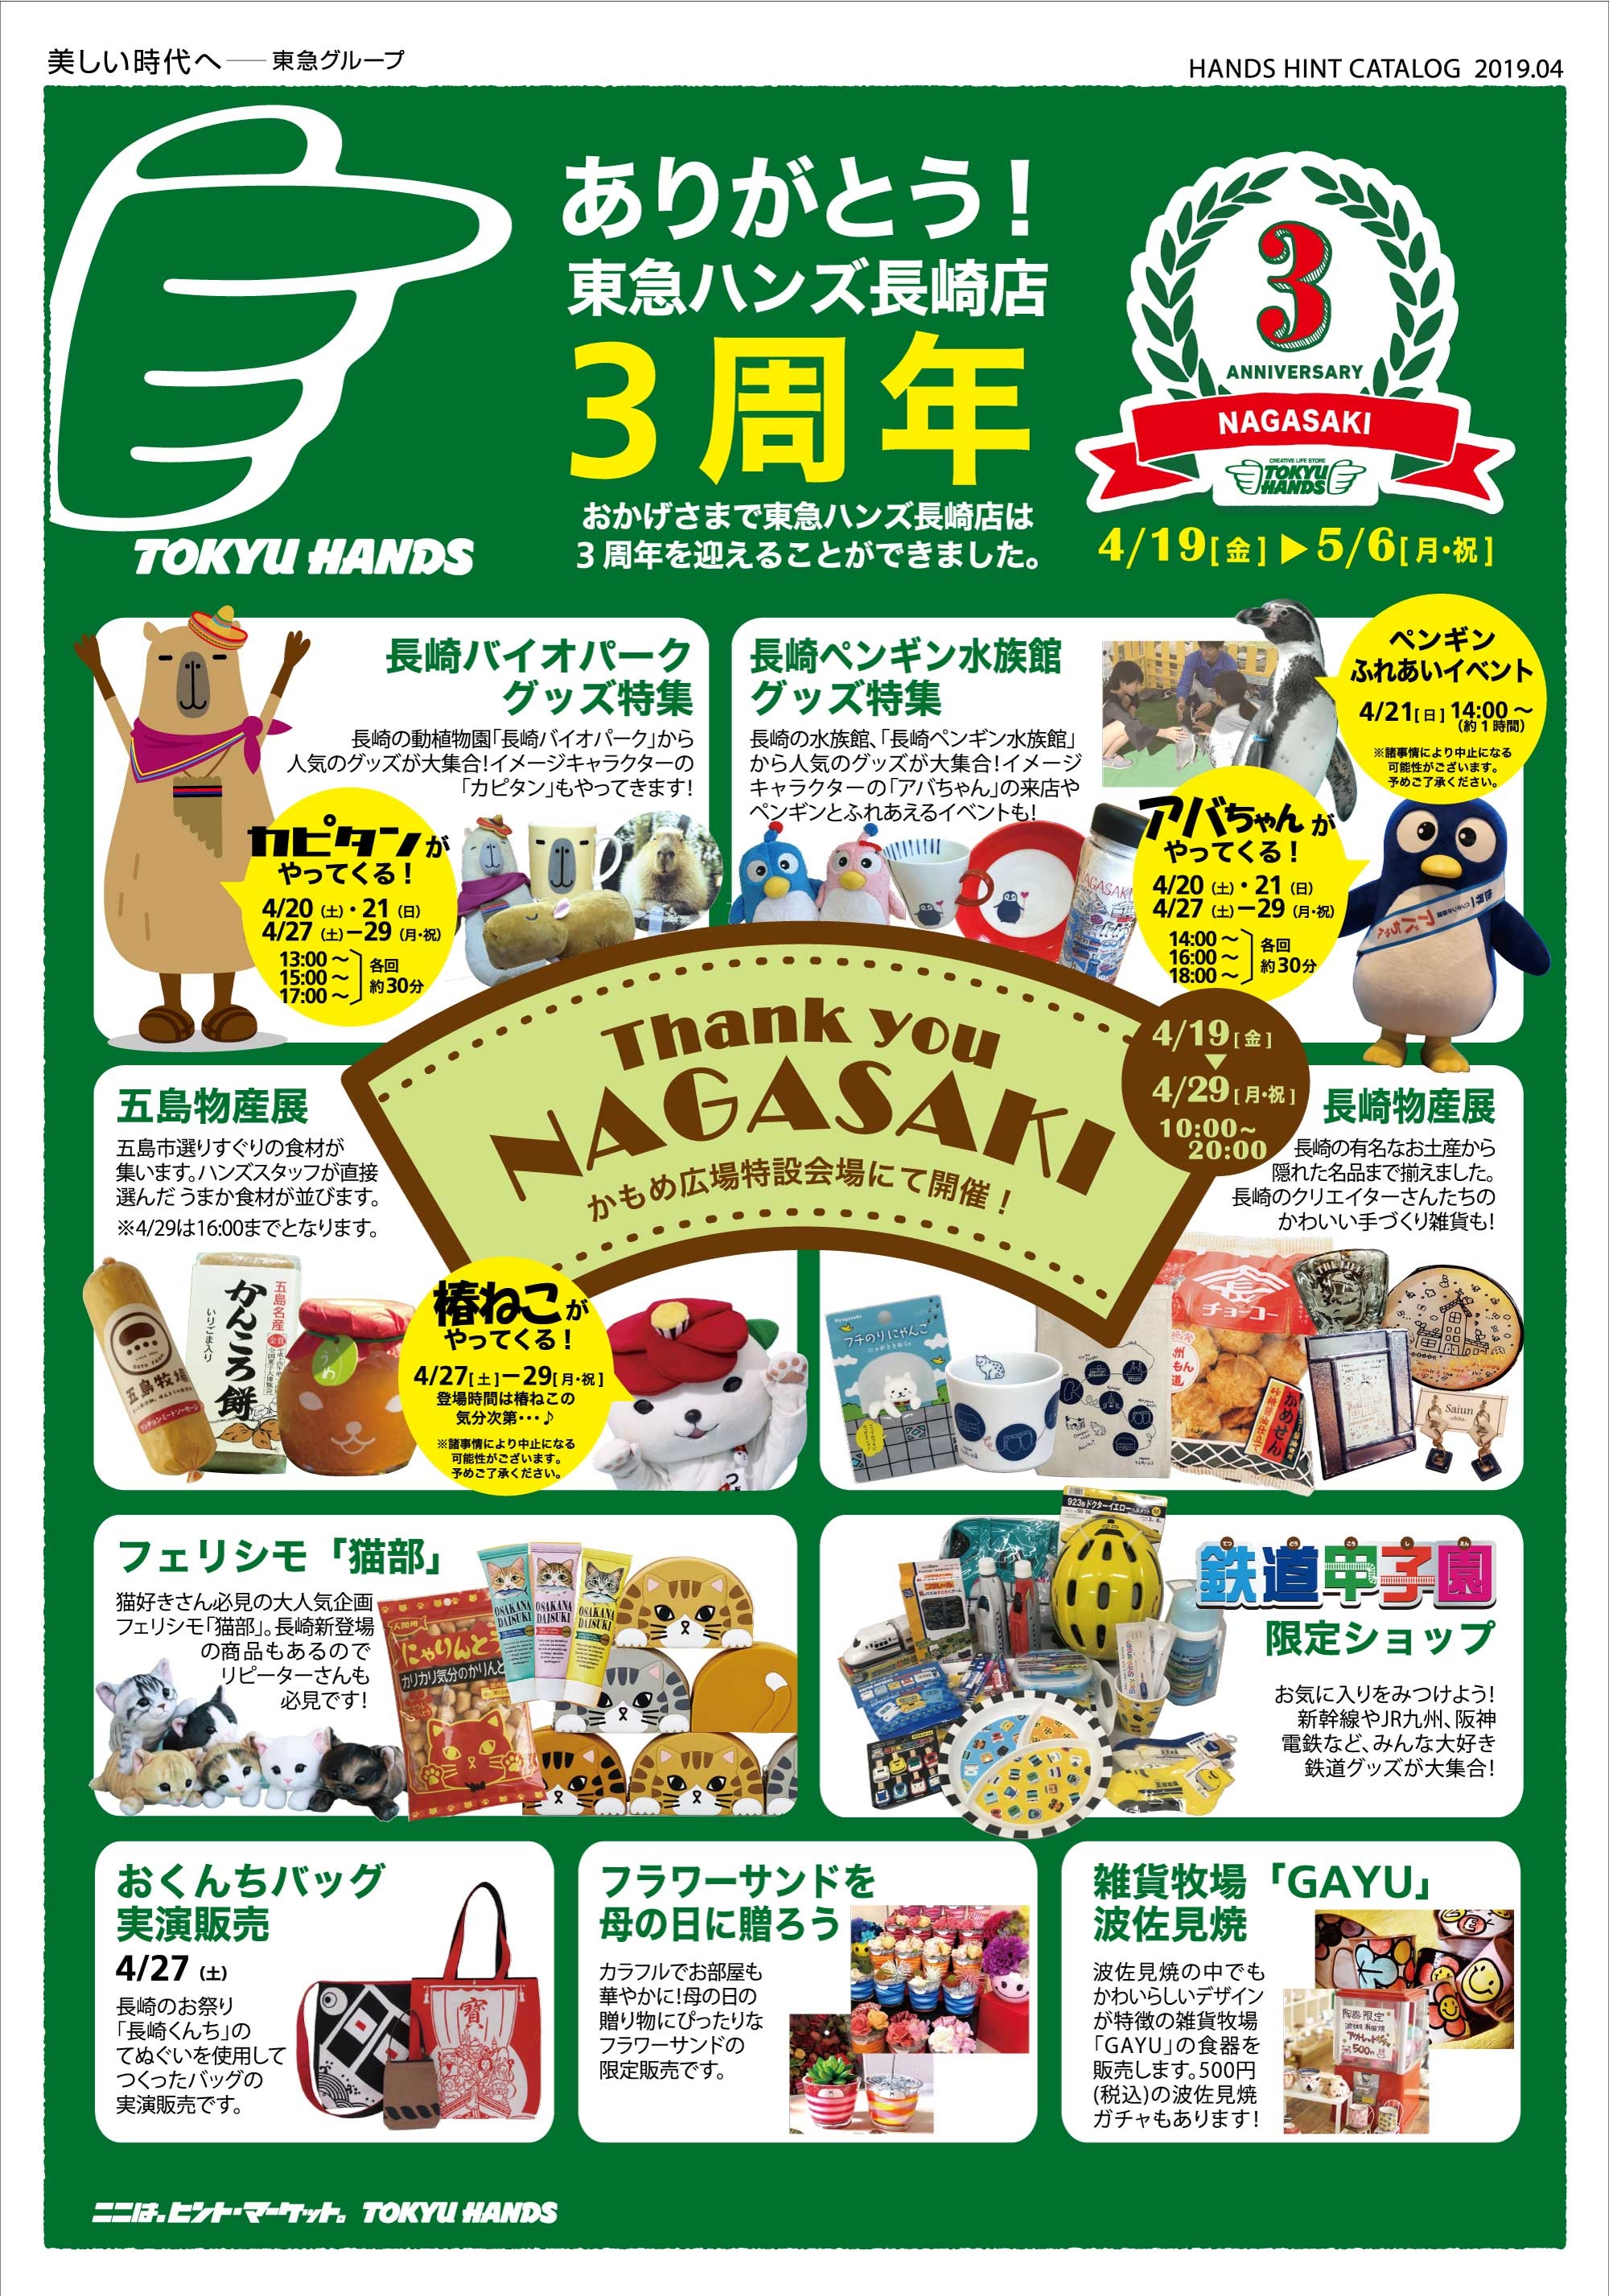 https://nagasaki.tokyu-hands.co.jp/item/608d4593c62a58c0360009c4b772166aa377fd29.jpg